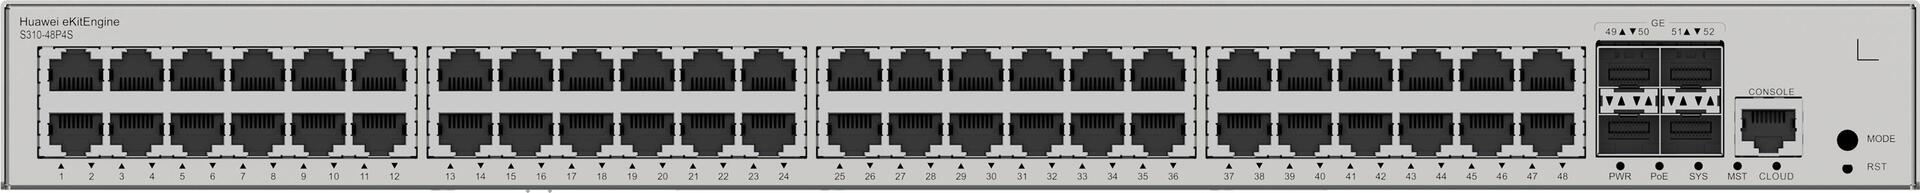 Huawei eKit Switch S310-48P4S 380W - Diese Serie von Ethernet-Switches - basierend auf hochleistungsfähiger Hardware der neuen Generation - kann in SOHO-Szenarien sowie für den Netzwerkzugang und die Aggregation in Unternehmenscampusnetzen eingesetzt werden. > Produkttyp- Switch- ear-Kategorie (ElektroG): relevant - Kategorie 6: kleine Geräte der IT- und TK-Technik - Kleine Geräte der IT- und TK-Technik B2C> Spezifikationen- Lüfter integriert- Switch-Art: Access> Anschlüsse- Bandbreite